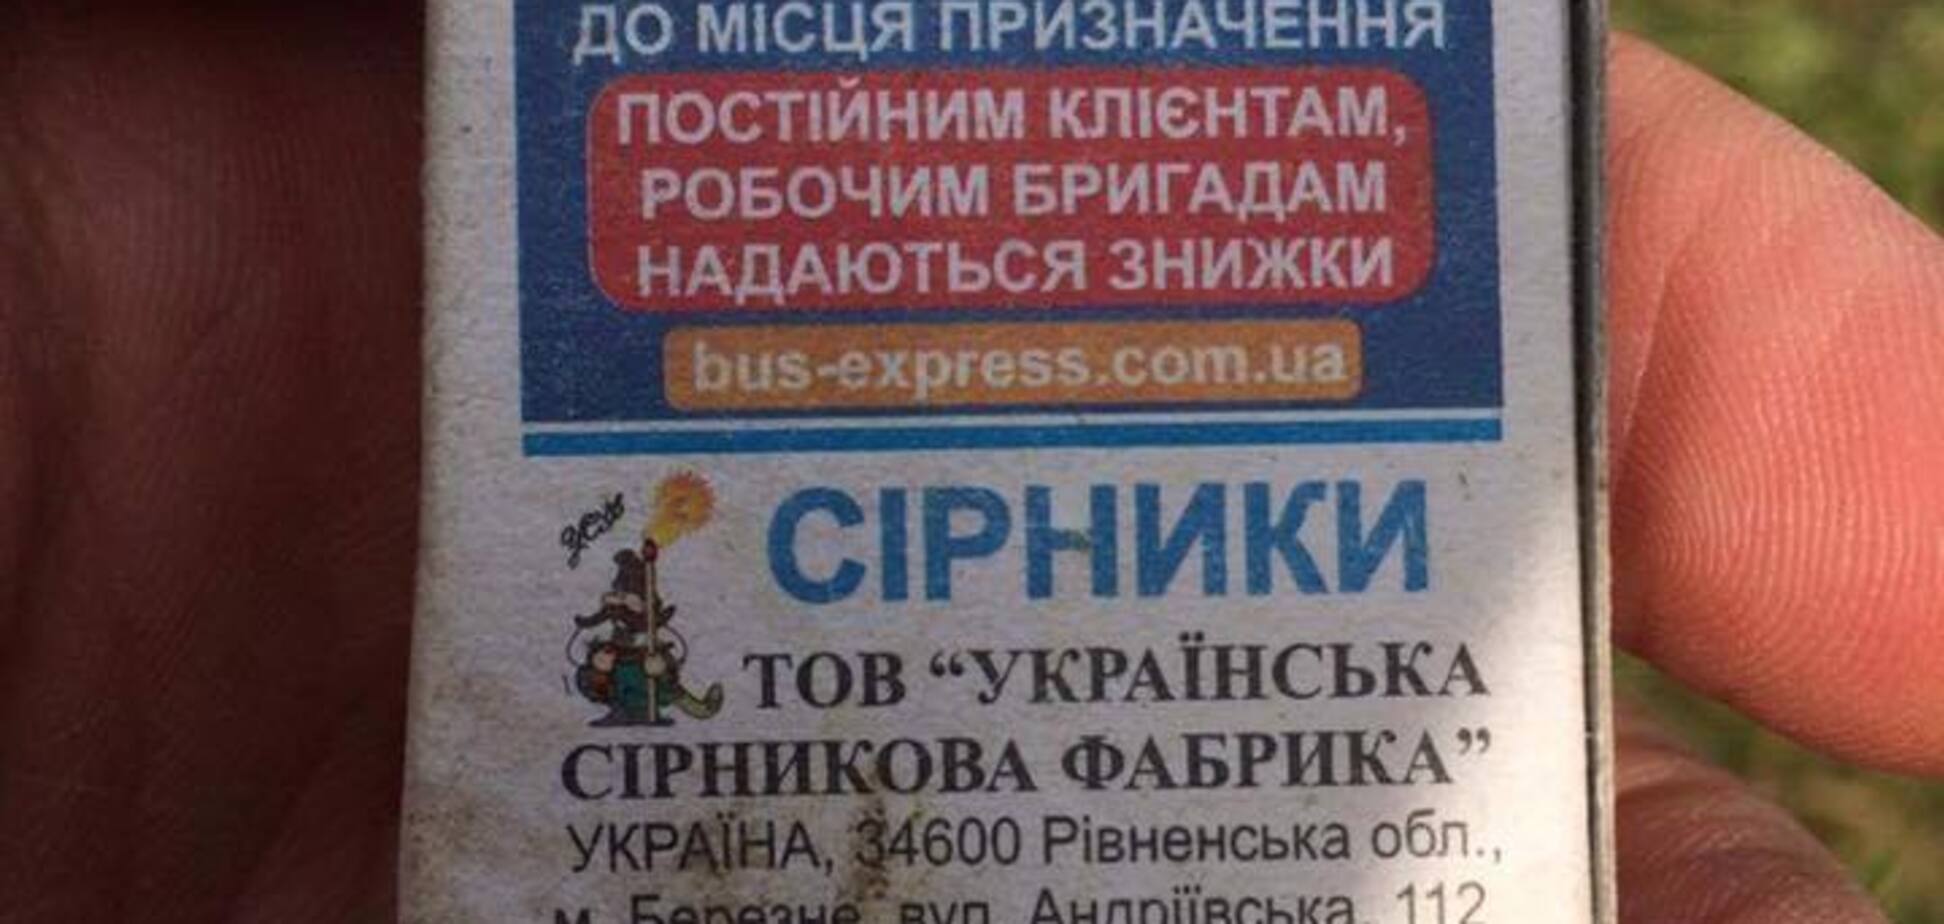 'Але зрада в Києві': мережу обурила реклама поїздок до Росії